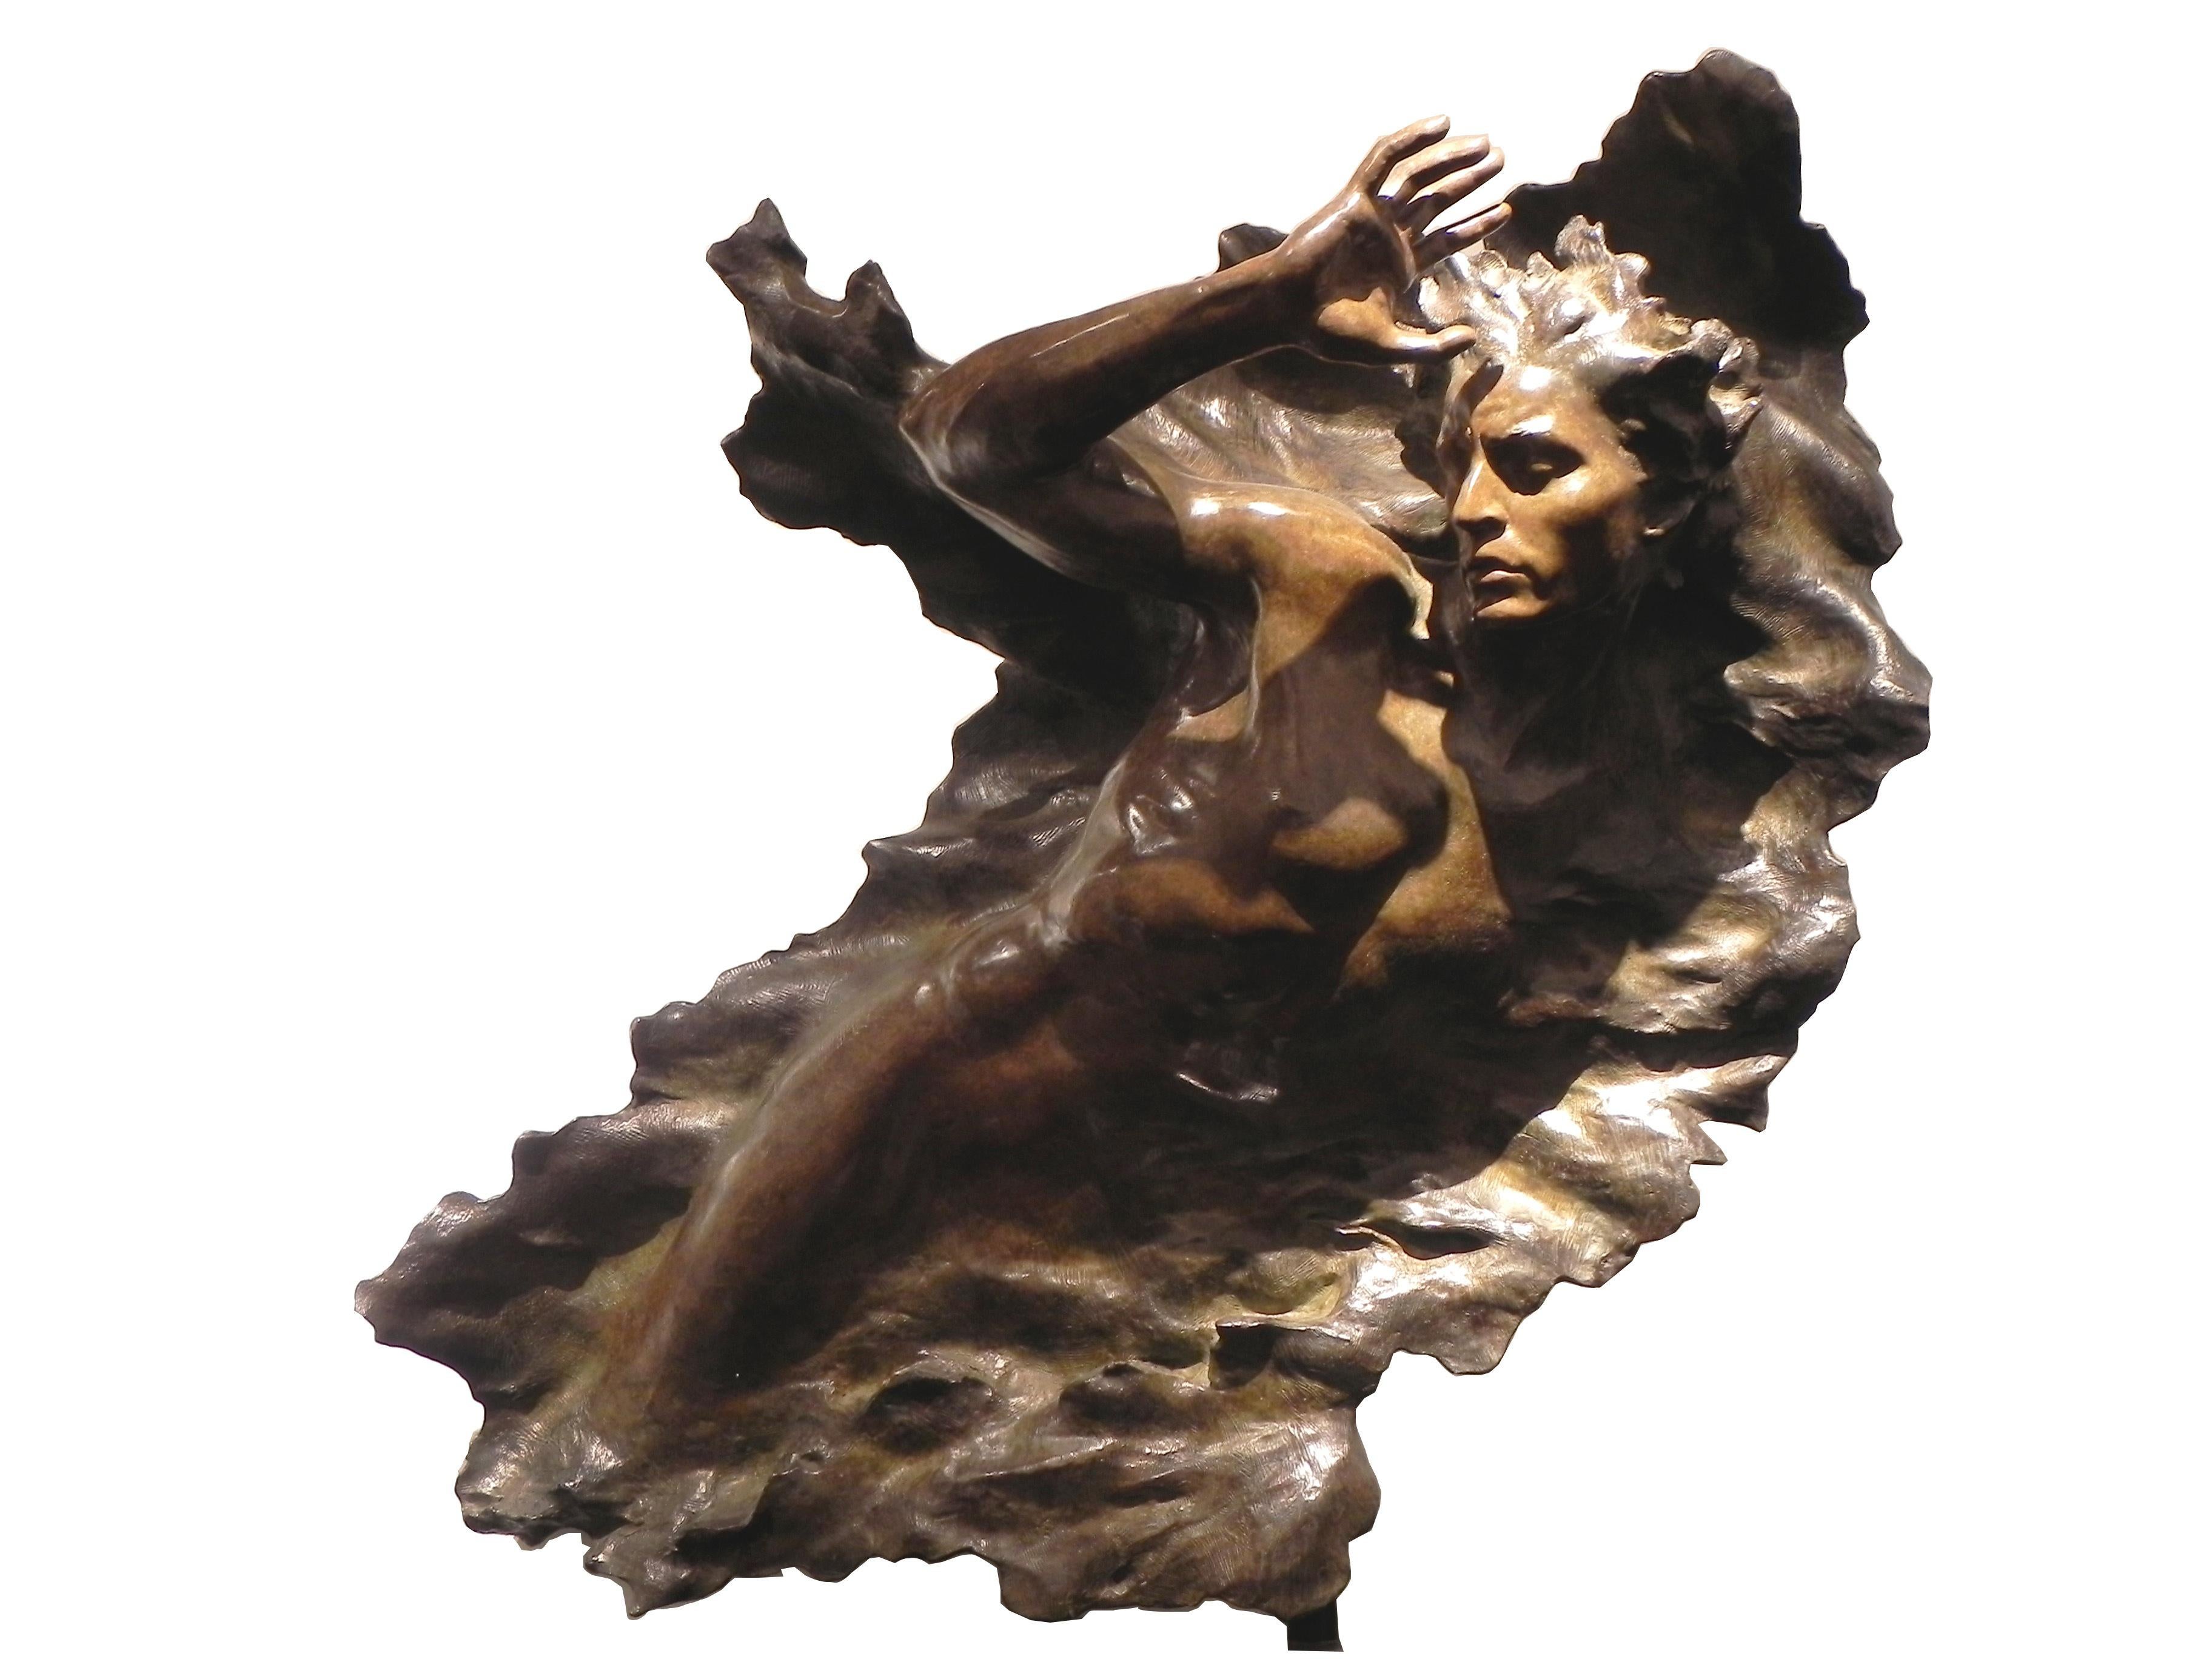 Ex Nihilo Figure 3 est un plâtre à l'échelle réelle de la sculpture de pierre finale de Ex Nihilo, commandée dans le cadre des sculptures de la création à la cathédrale nationale de Washington. Des éditions en bronze réalisées ultérieurement et